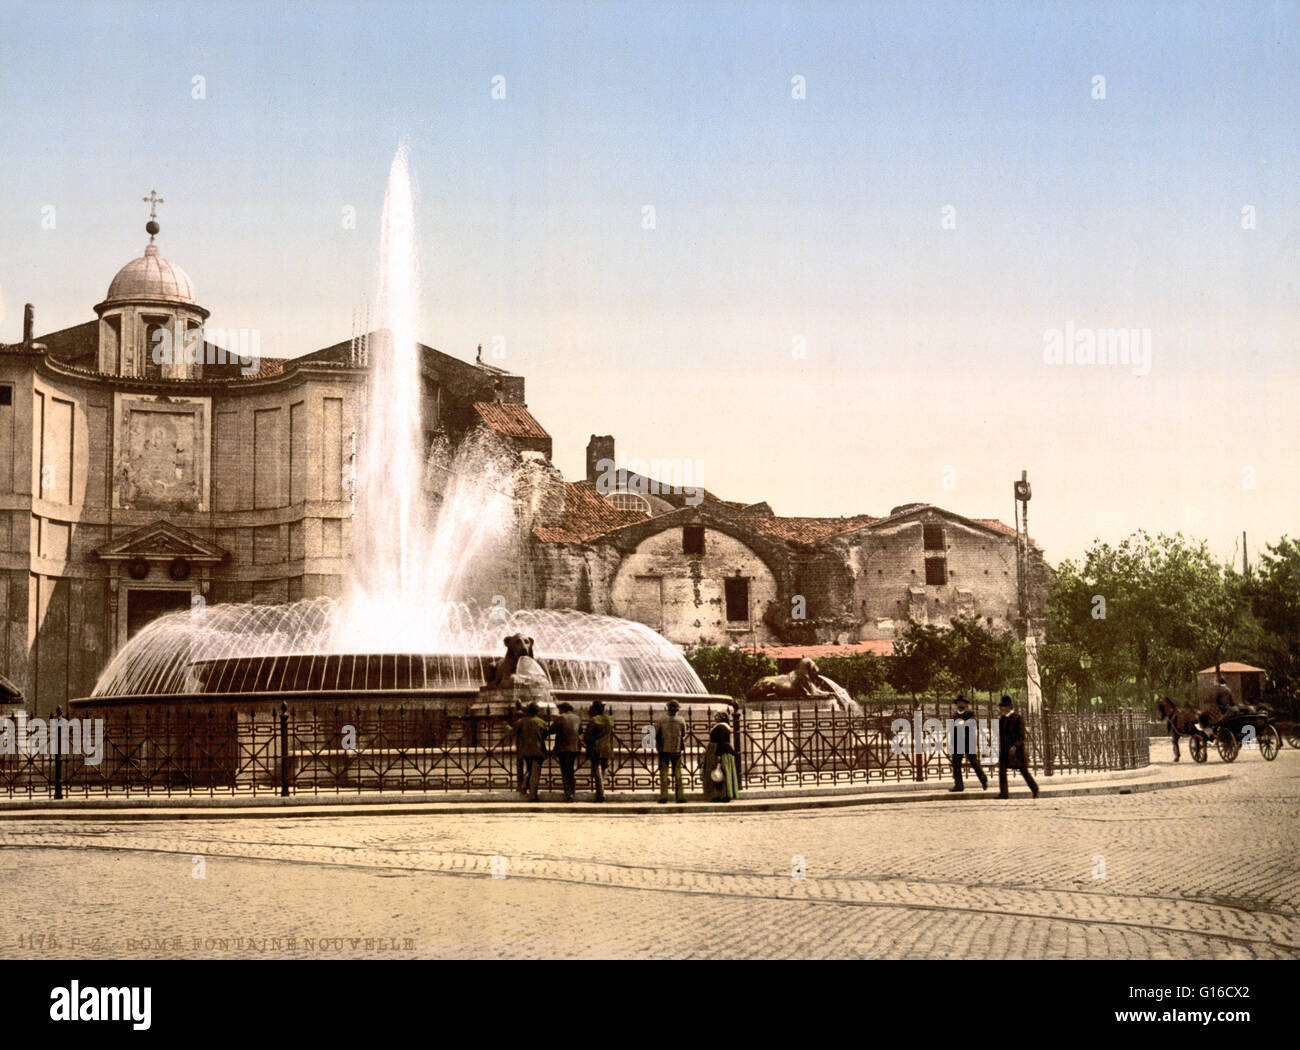 Unter dem Titel: "neue Brunnen und Diokletian Frühling, Rom, Italien". Piazza della Repubblica ist eine halbkreisförmige Piazza in Rom, auf dem Gipfel des Hügels Viminal, neben dem Bahnhof Termini. Der frühere Name des Platzes, Piazza dell'Esedra, immer noch sehr häufig Stockfoto